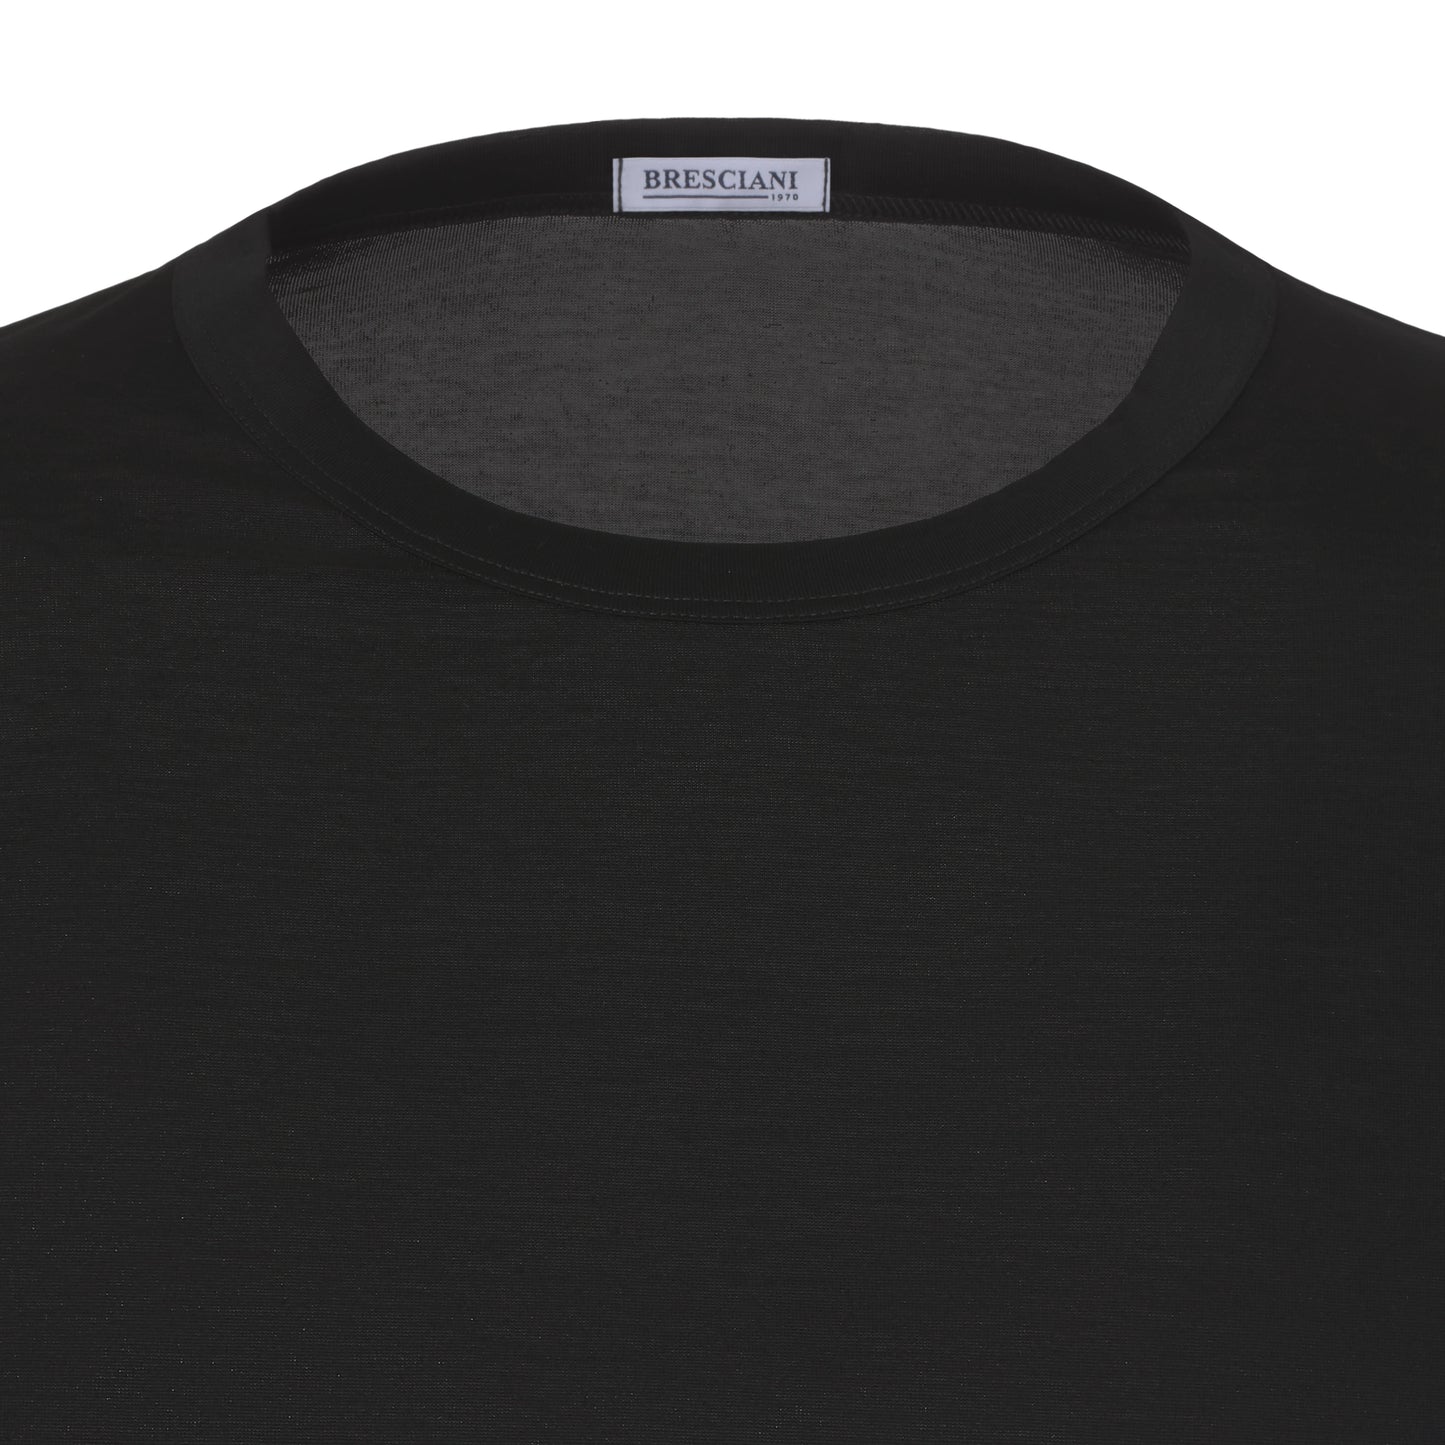 Baumwoll-T-Shirt mit Rundhalsausschnitt in Schwarz